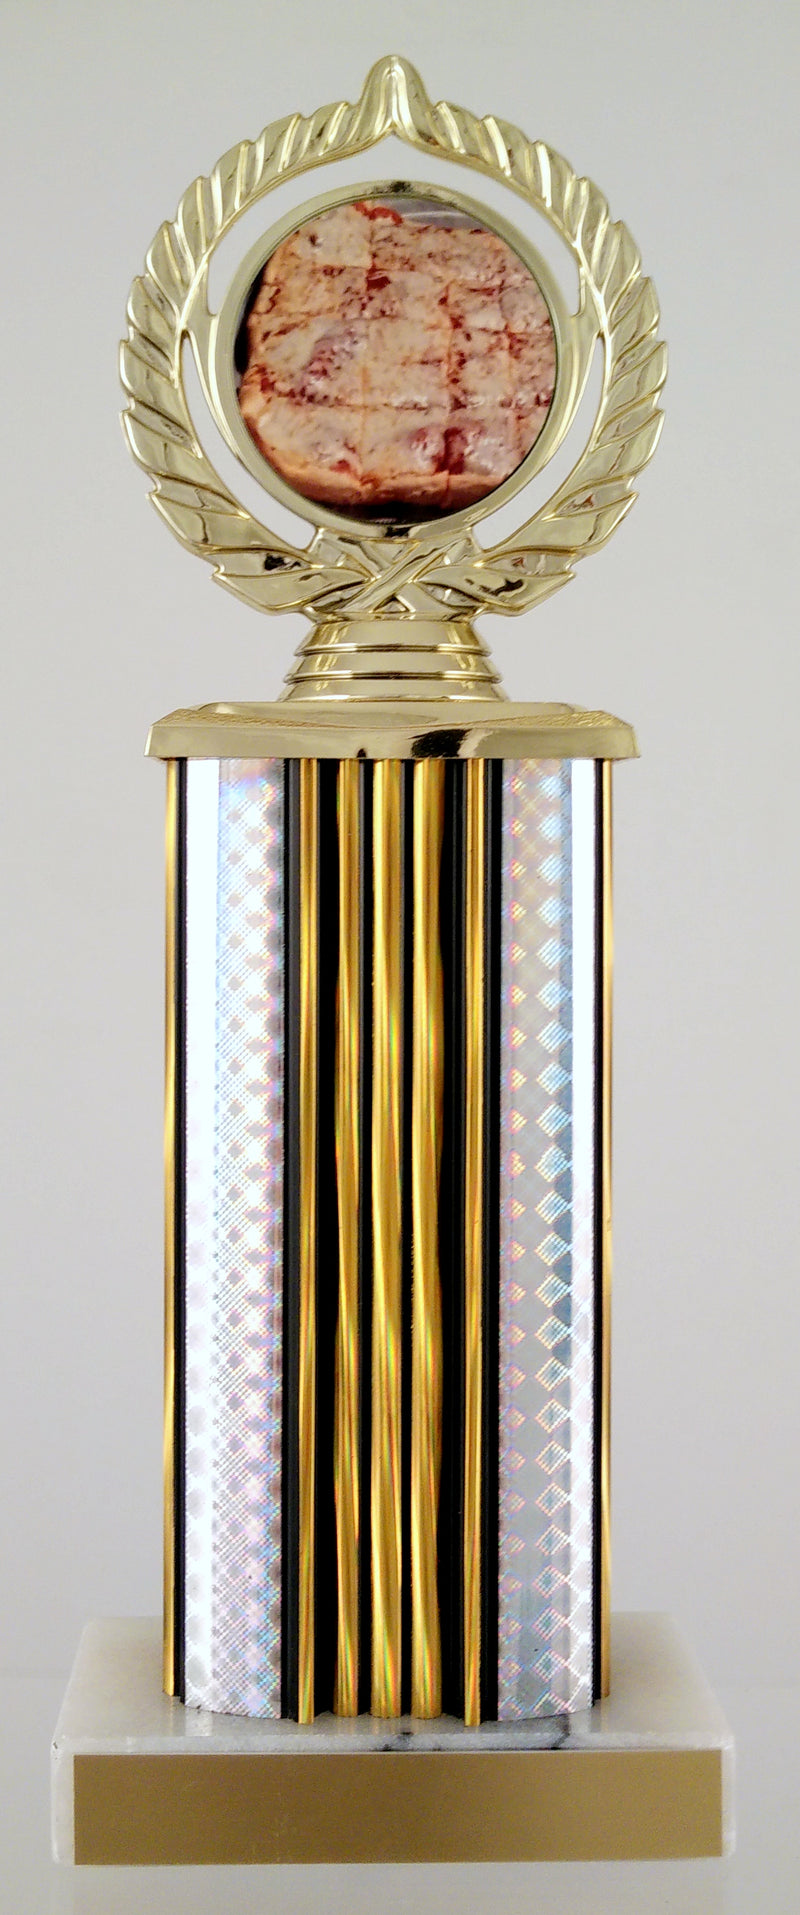 Pizza Logo Trophy On Wide Column-Trophy-Schoppy&